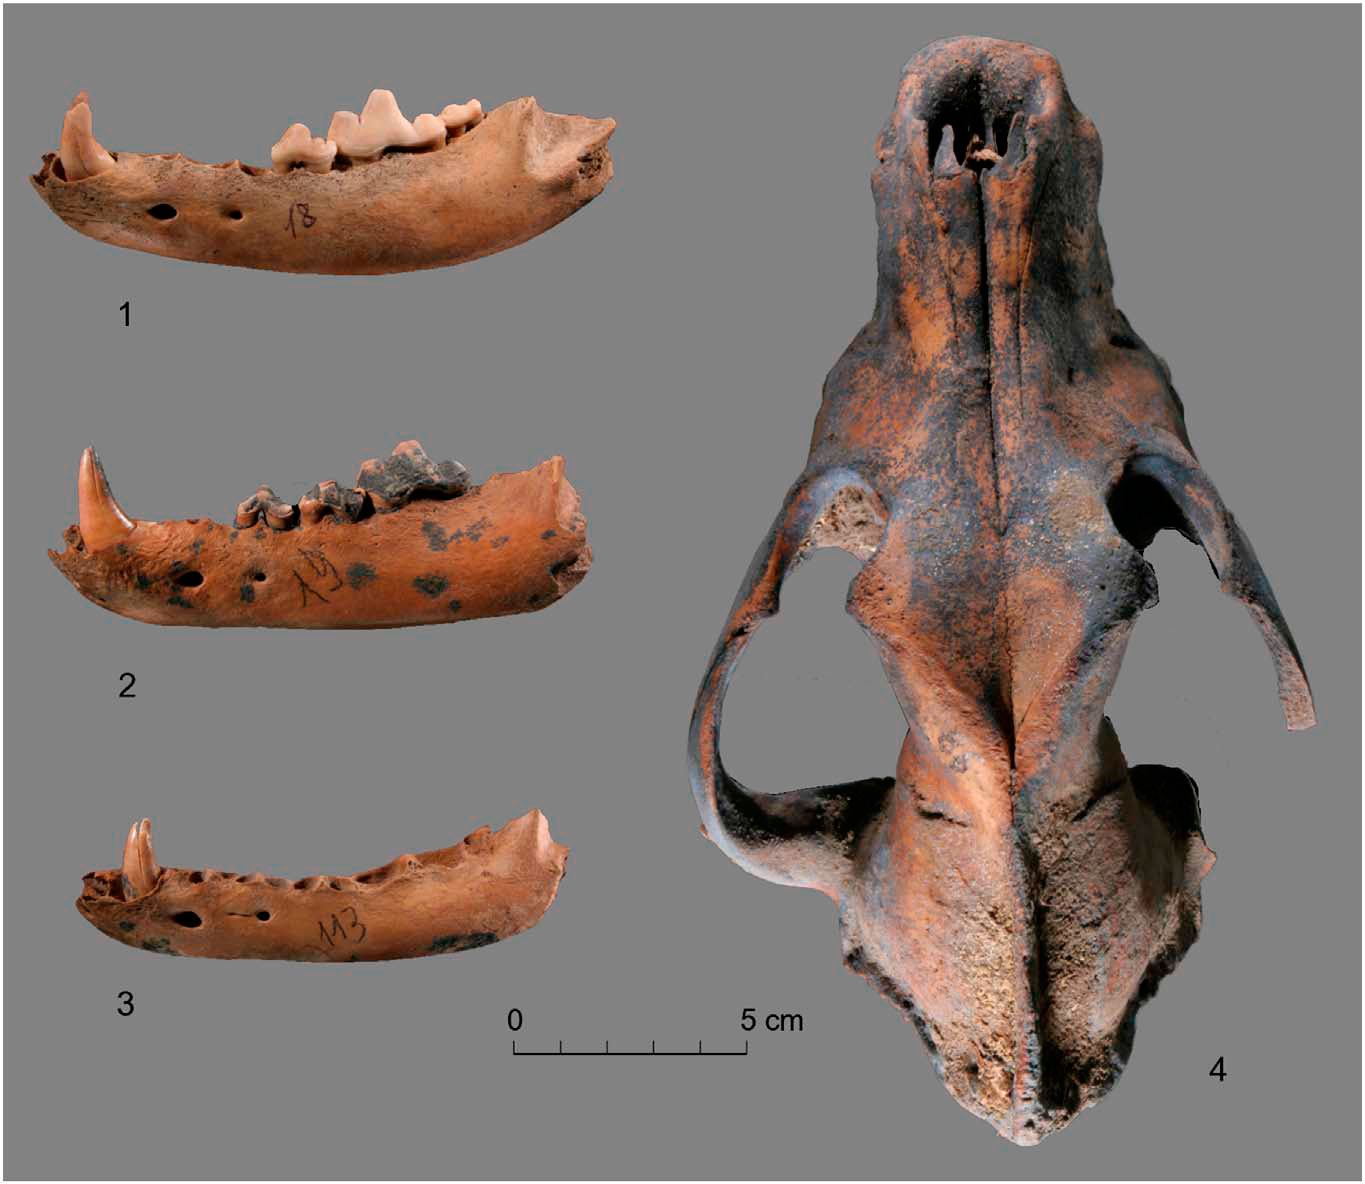 Находки останков собак на острове Жохова — 3 нижние челюсти, найденные в 2004 году, и череп, найденный в 2003 году.